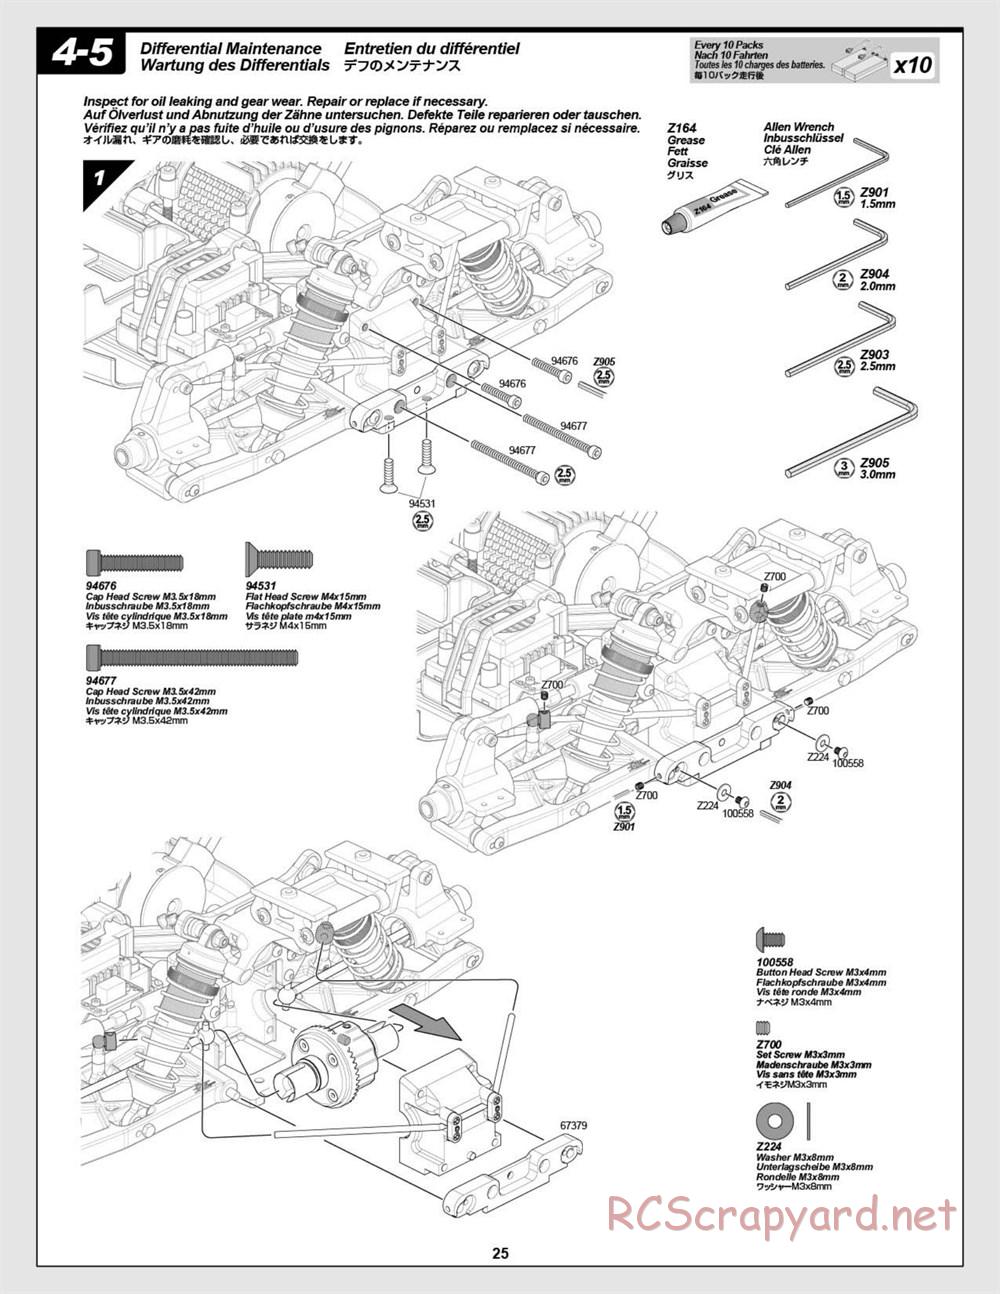 HPI - Vorza Flux HP - Manual - Page 25